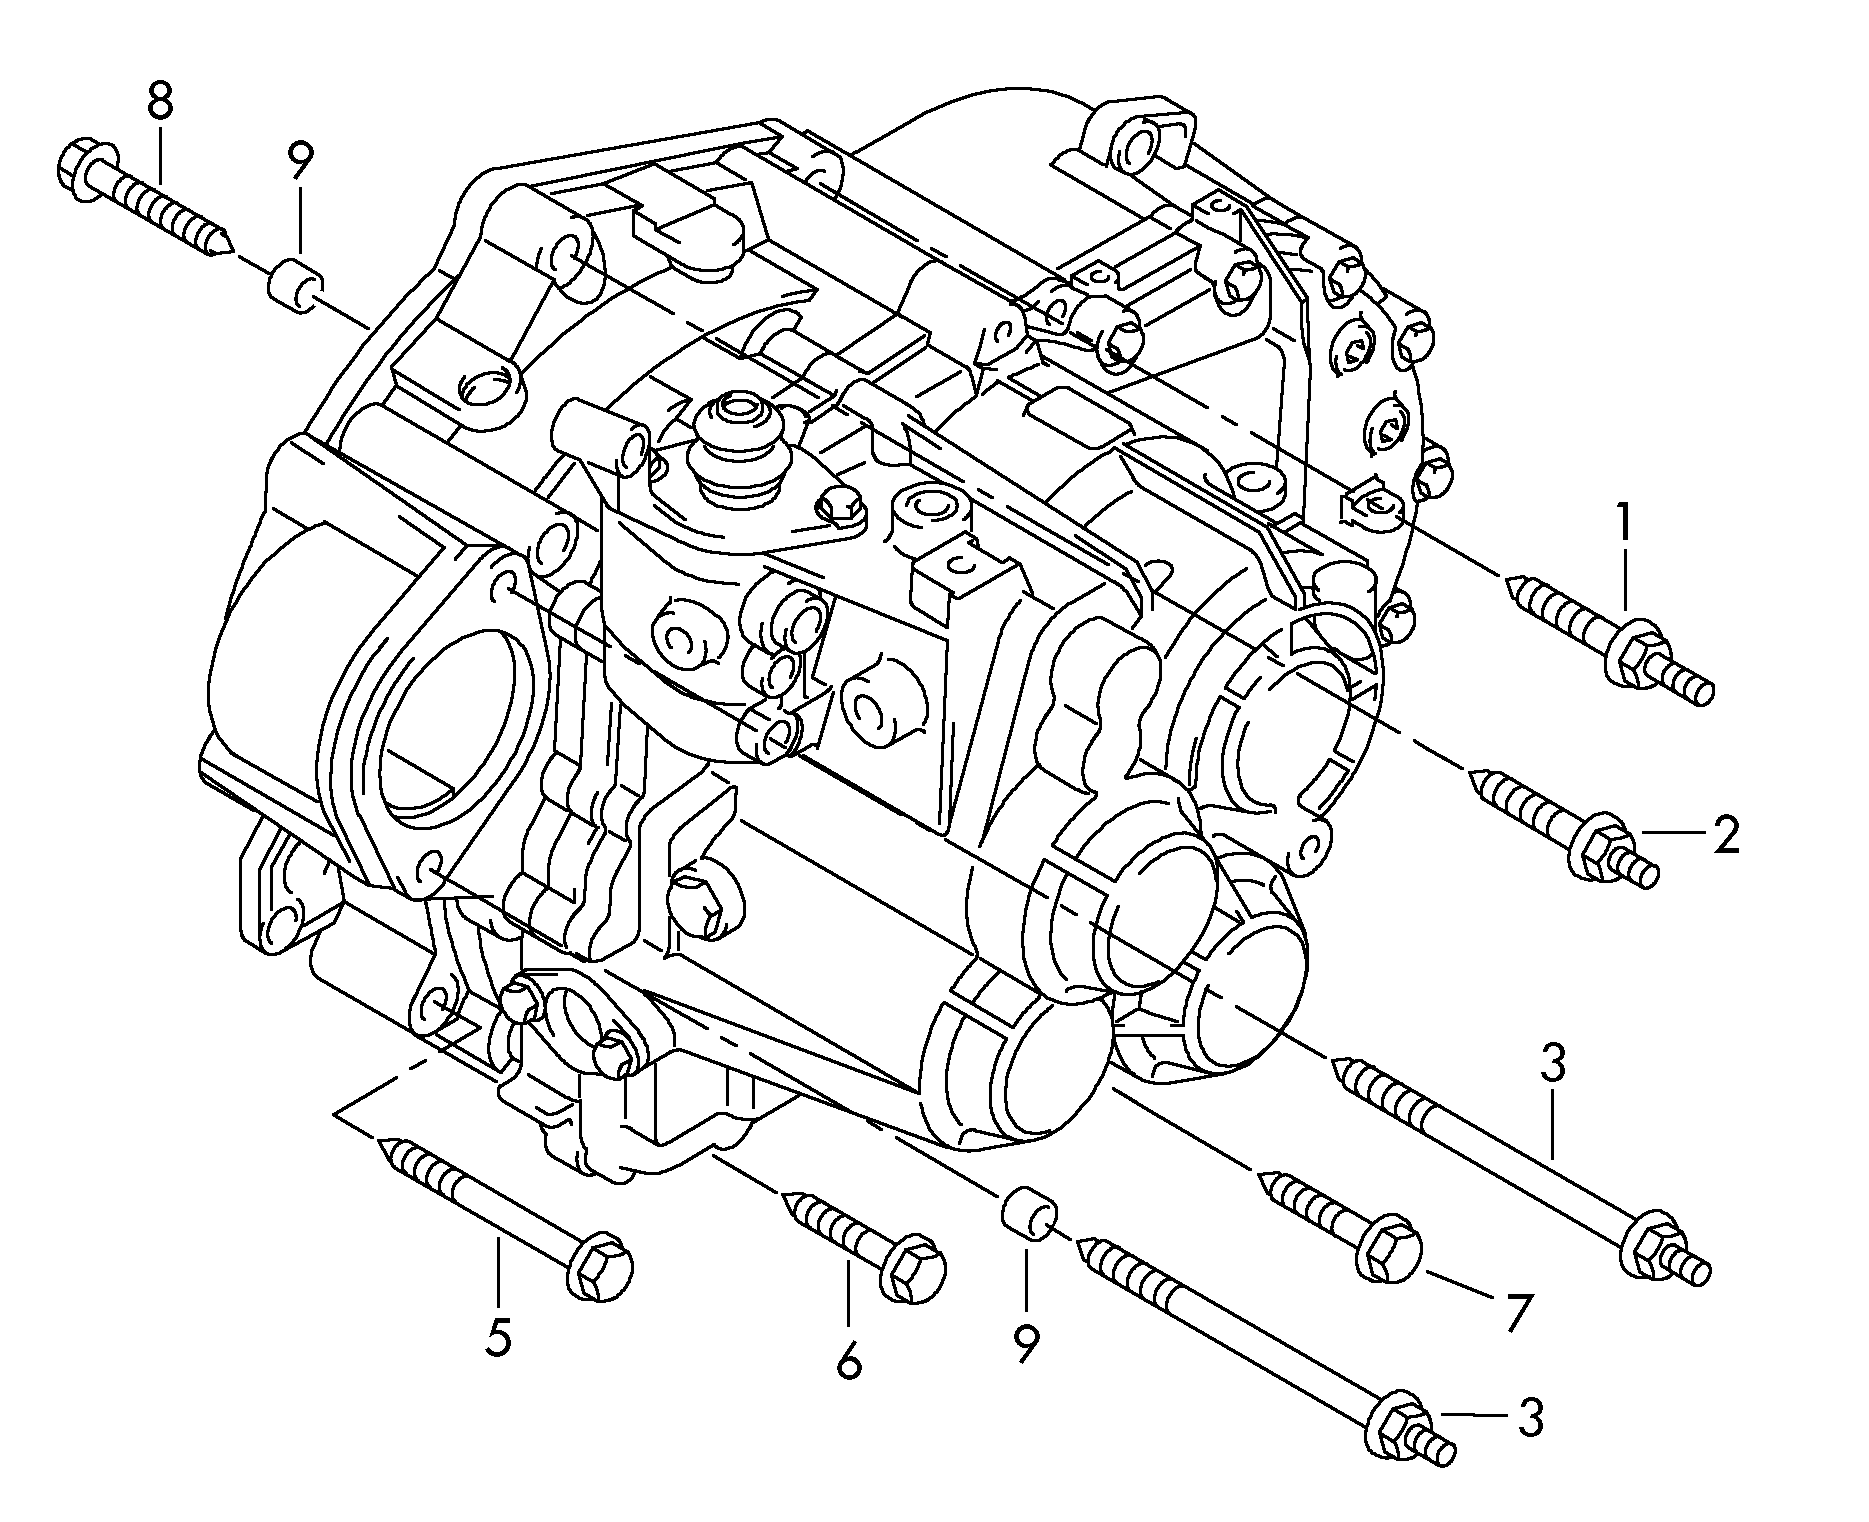 Befestigungsteile für Motor<br>und Getriebefür 6-Gang SchaltgetriebeAllradantrieb MQ350 - Octavia - oct